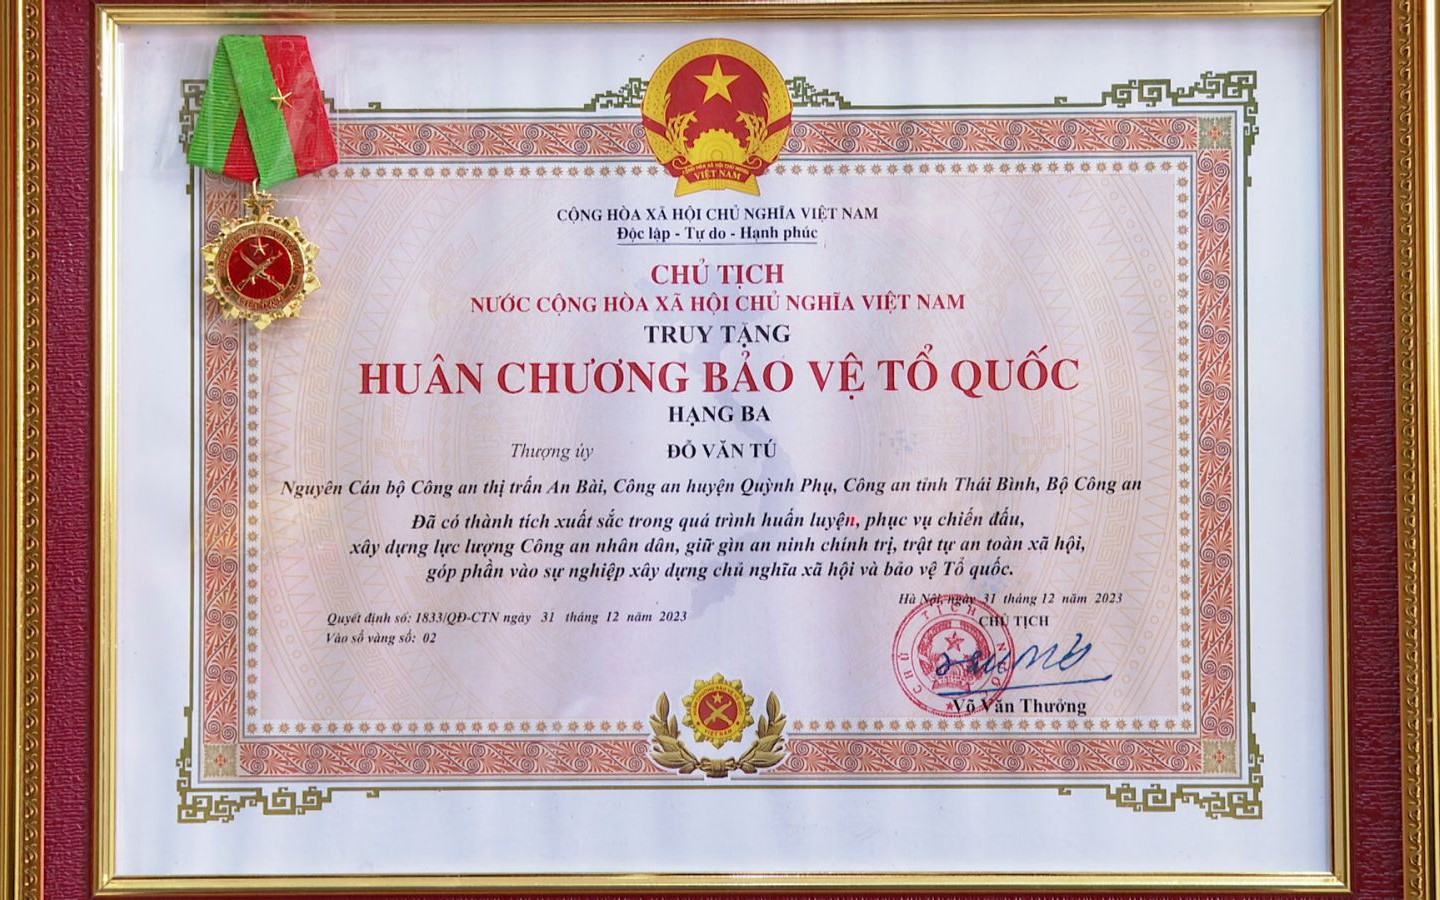 Trao truy tặng Huân chương Bảo vệ Tổ quốc cho thượng uý Công an bị đâm tử vong ở Thái Bình